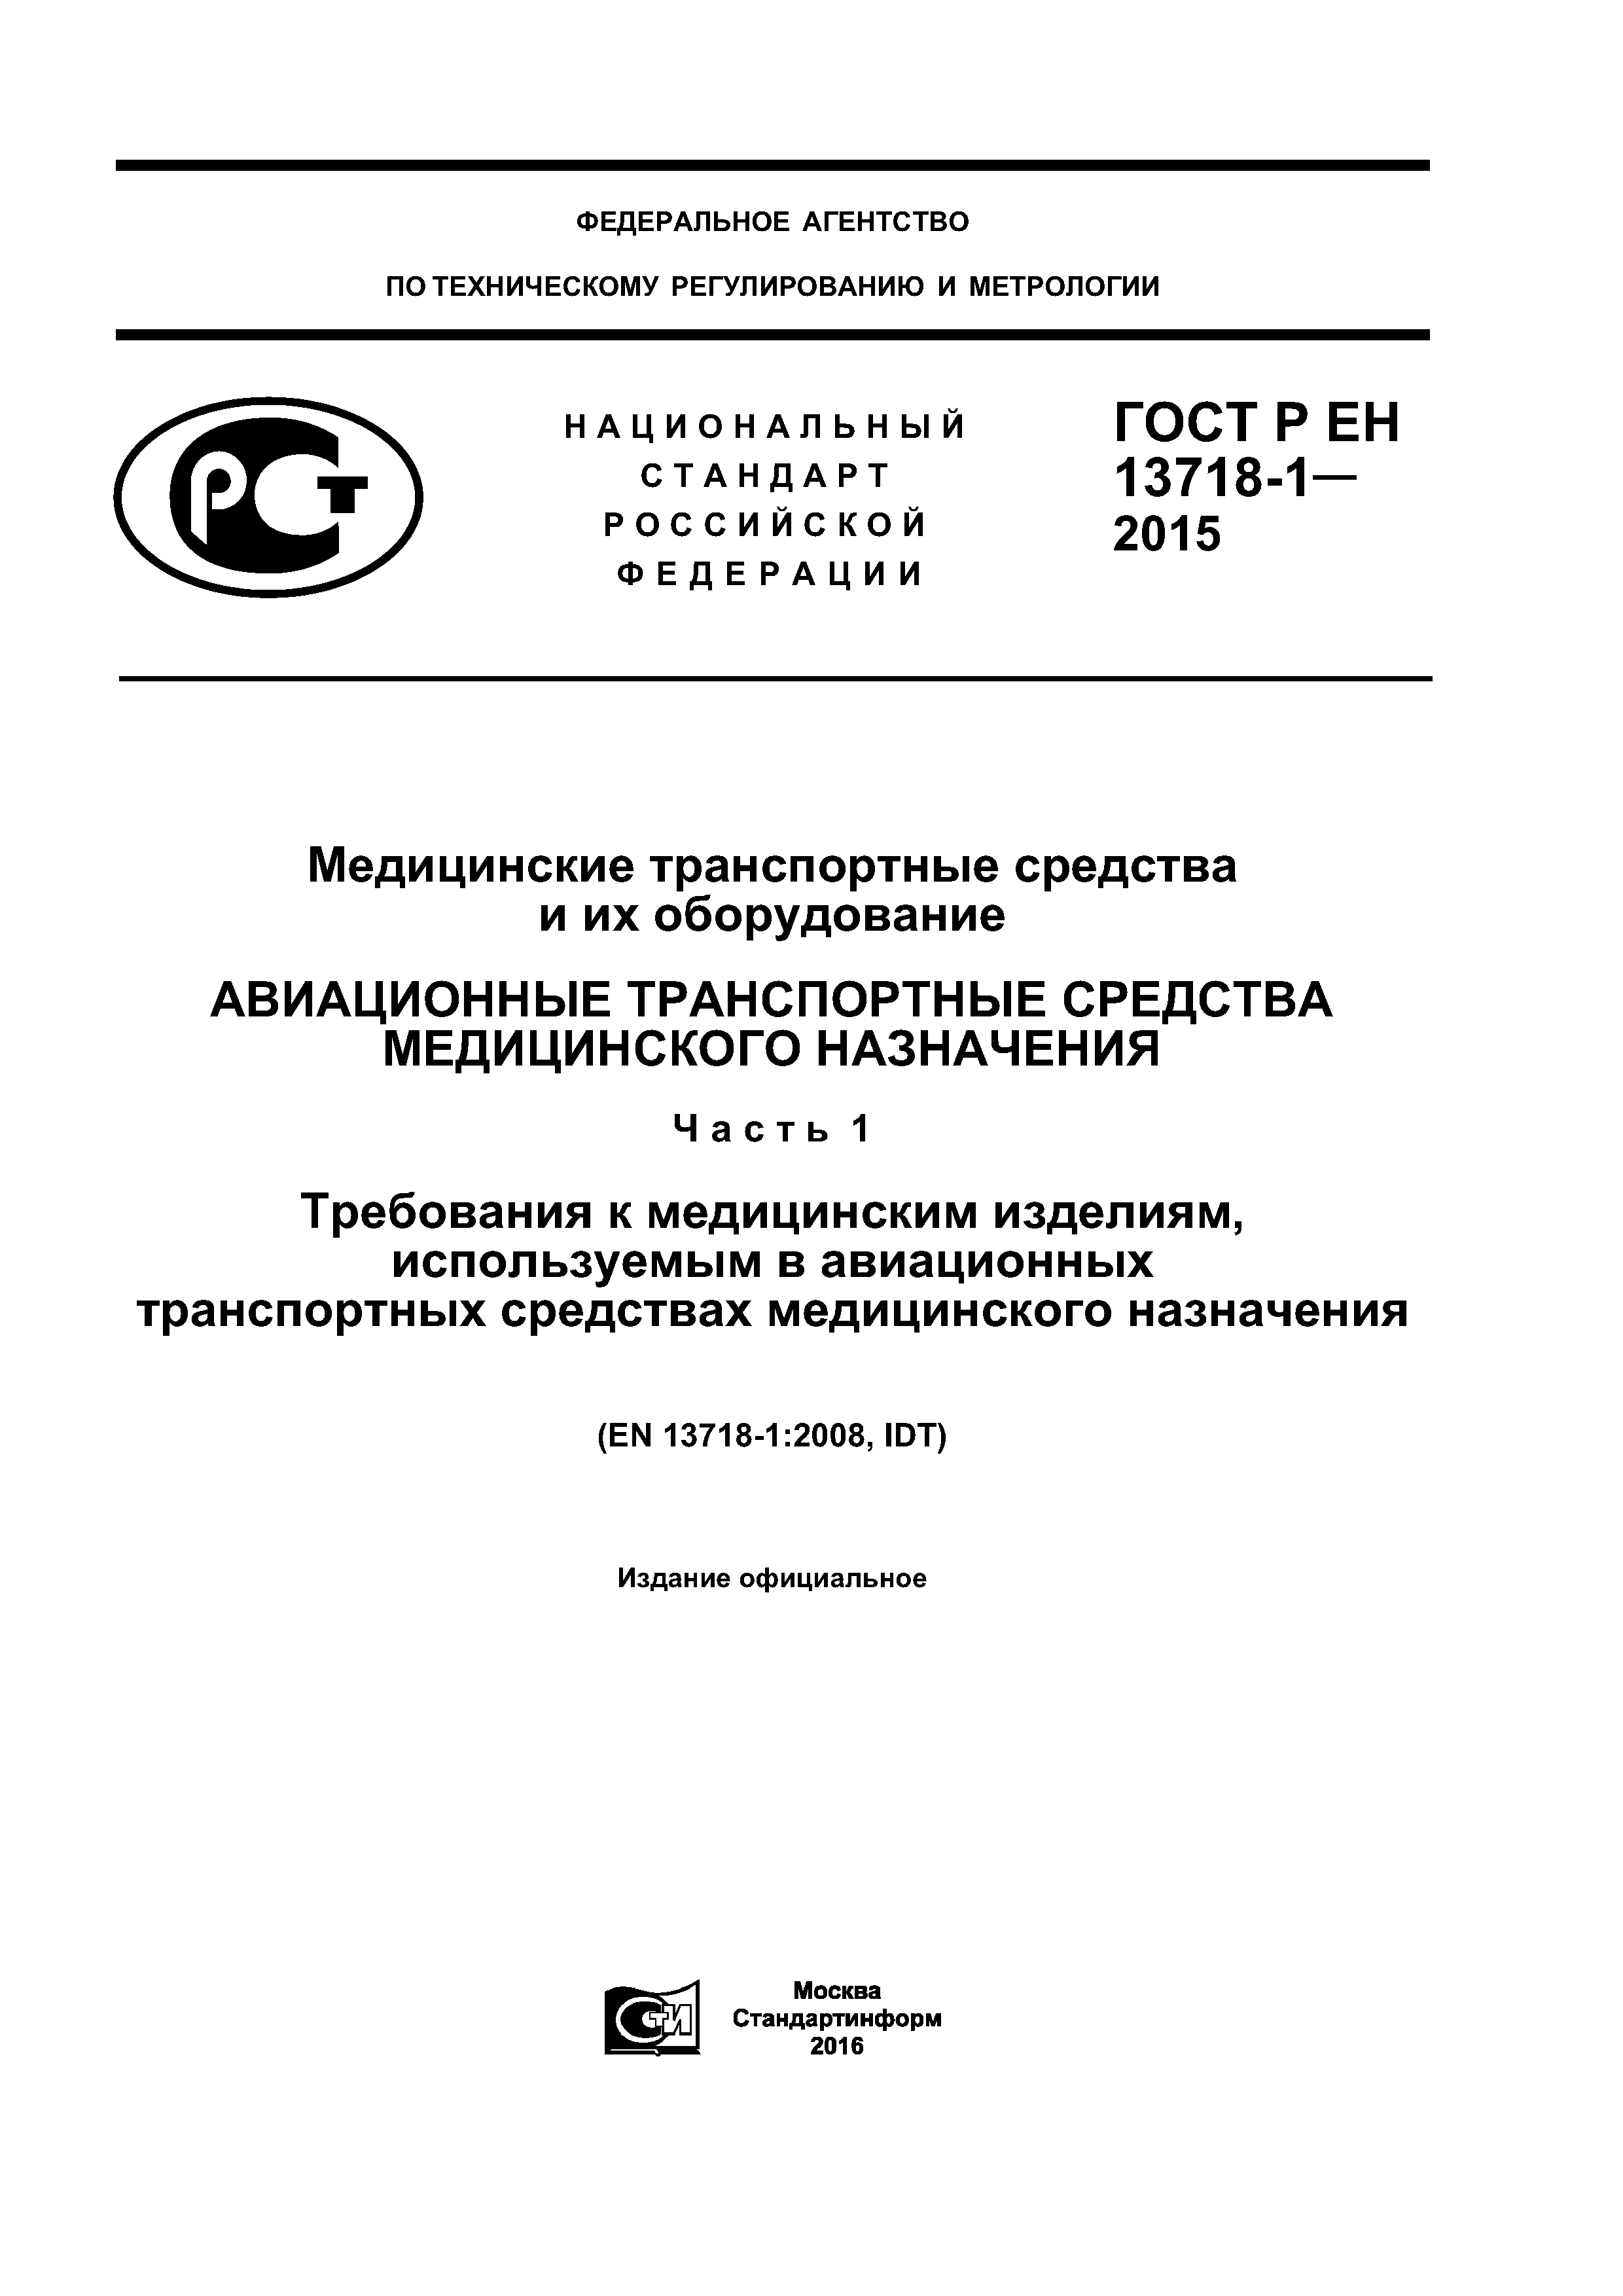 ГОСТ Р ЕН 13718-1-2015